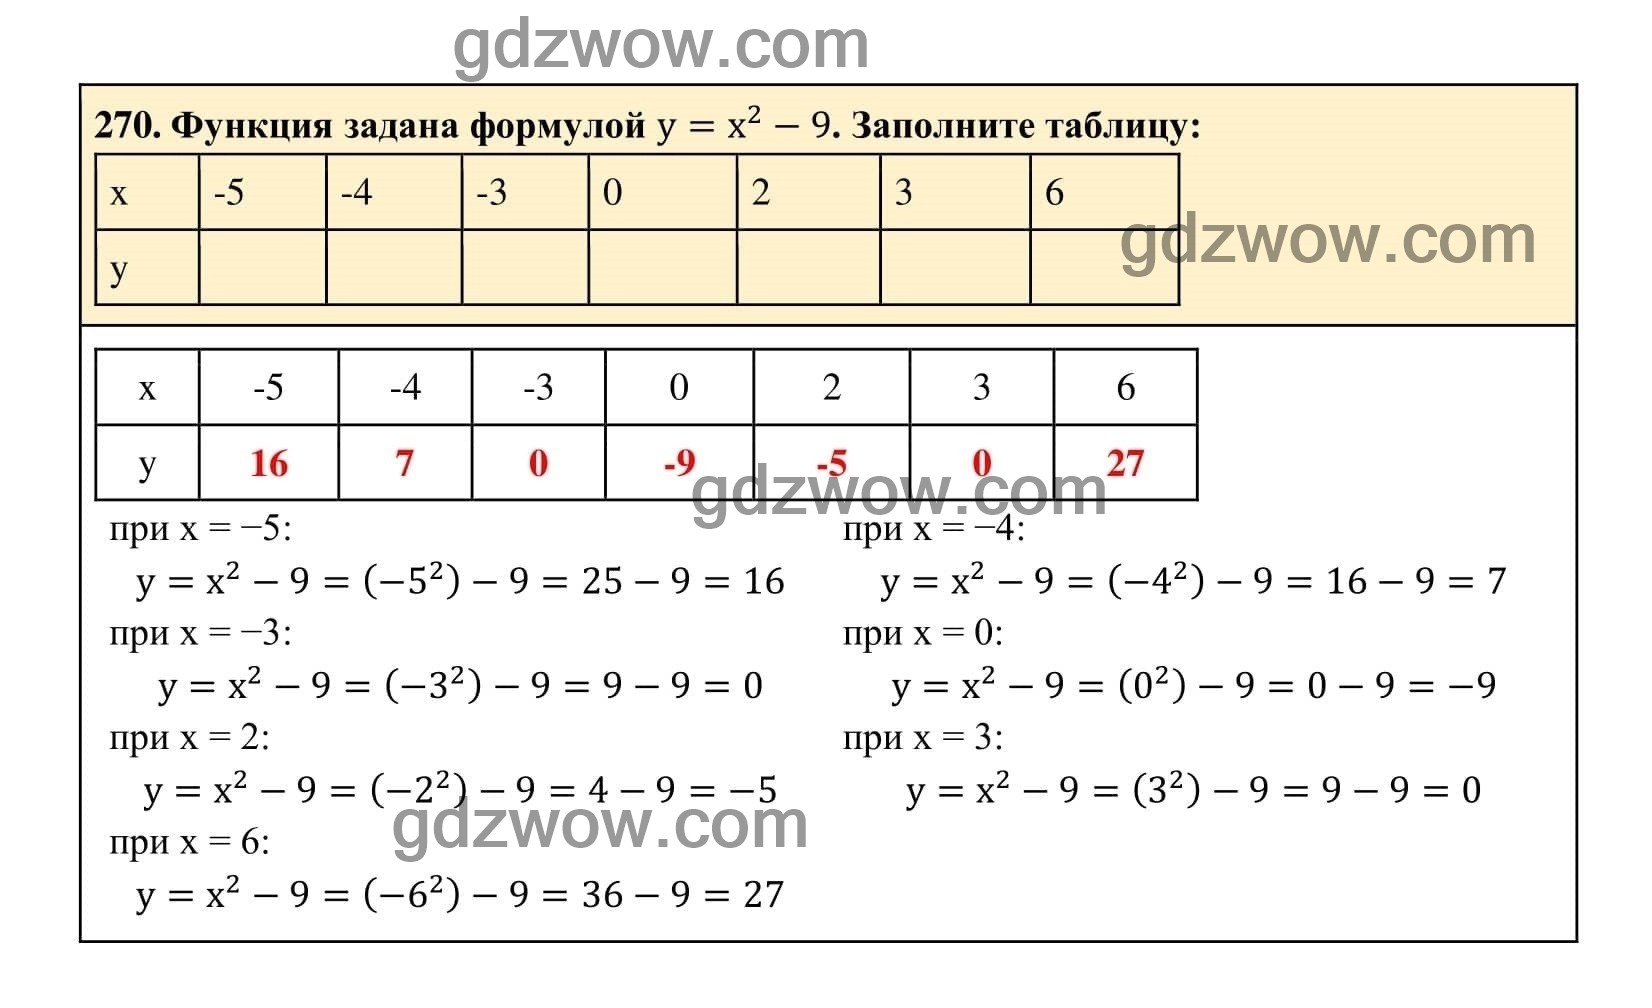 Упражнение 270 - ГДЗ по Алгебре 7 класс Учебник Макарычев (решебник) - GDZwow